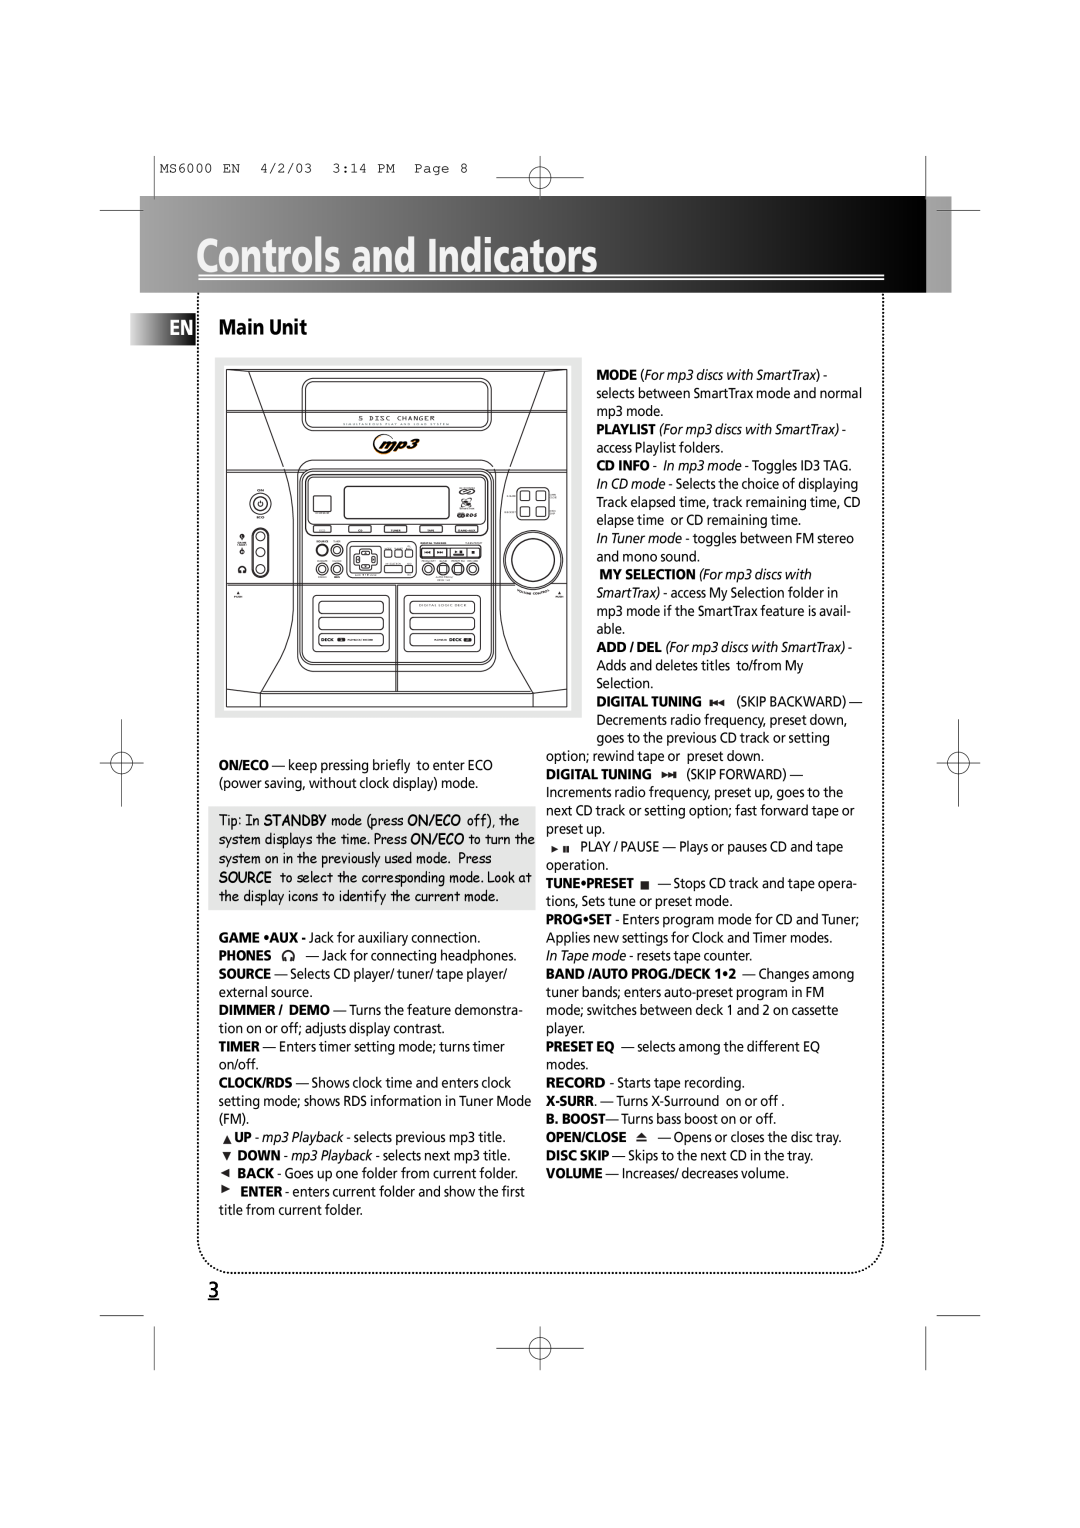 Technicolor - Thomson MS6000 manual Controls and Indicators, EN Main Unit 